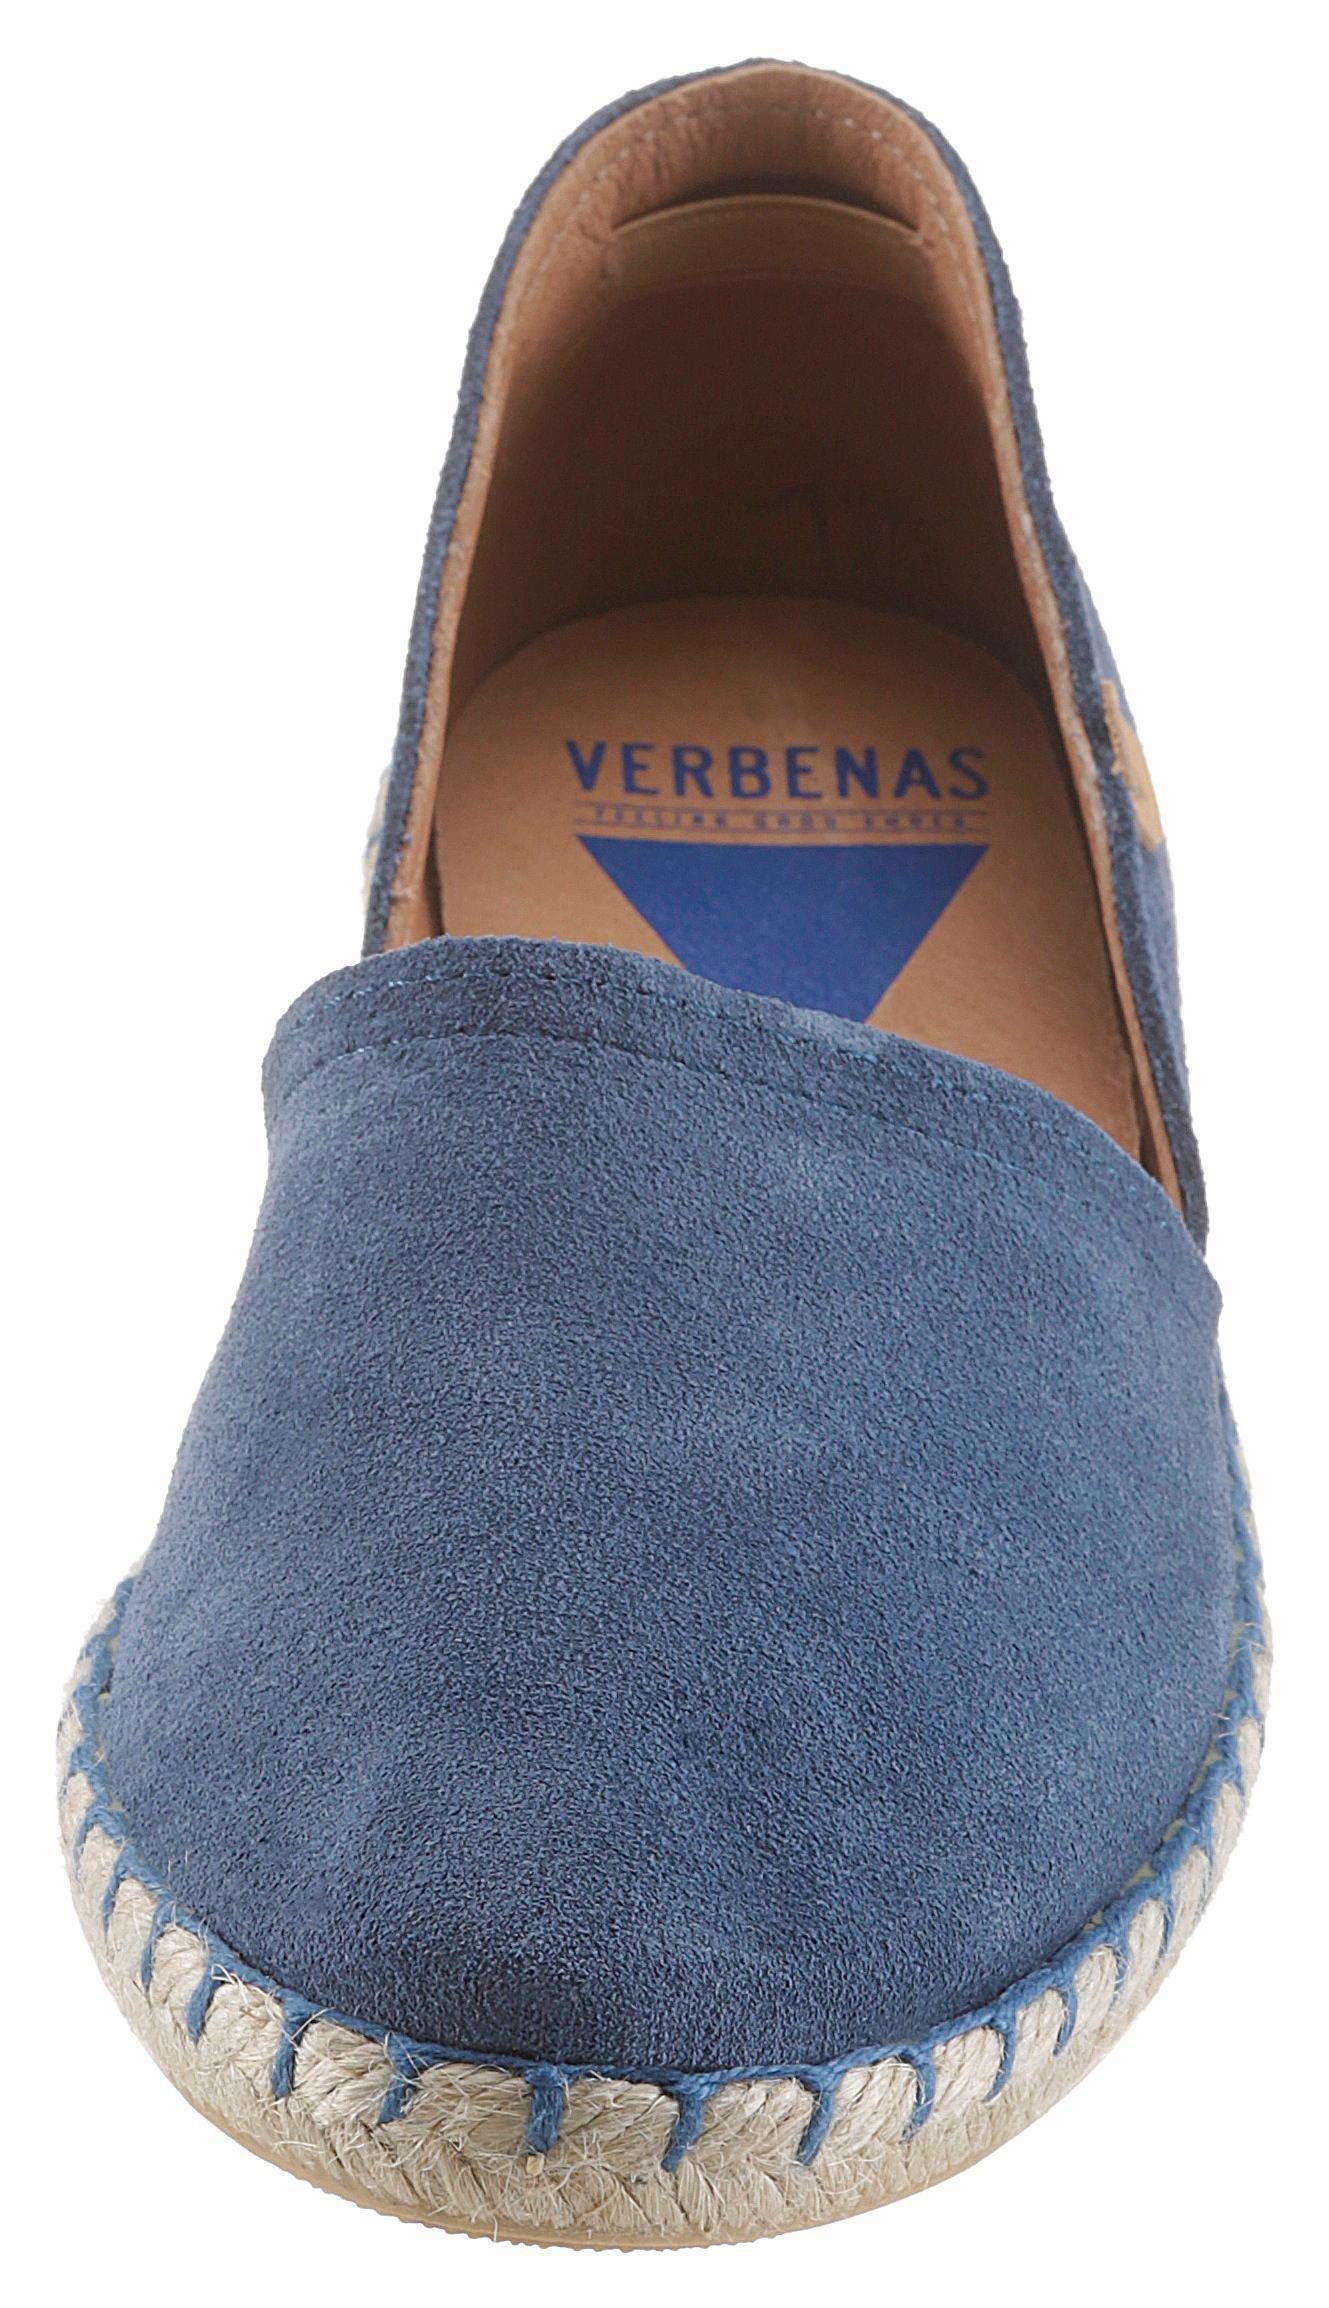 VERBENAS Espadrille mit Jute-Rahmen typischem jeansblau